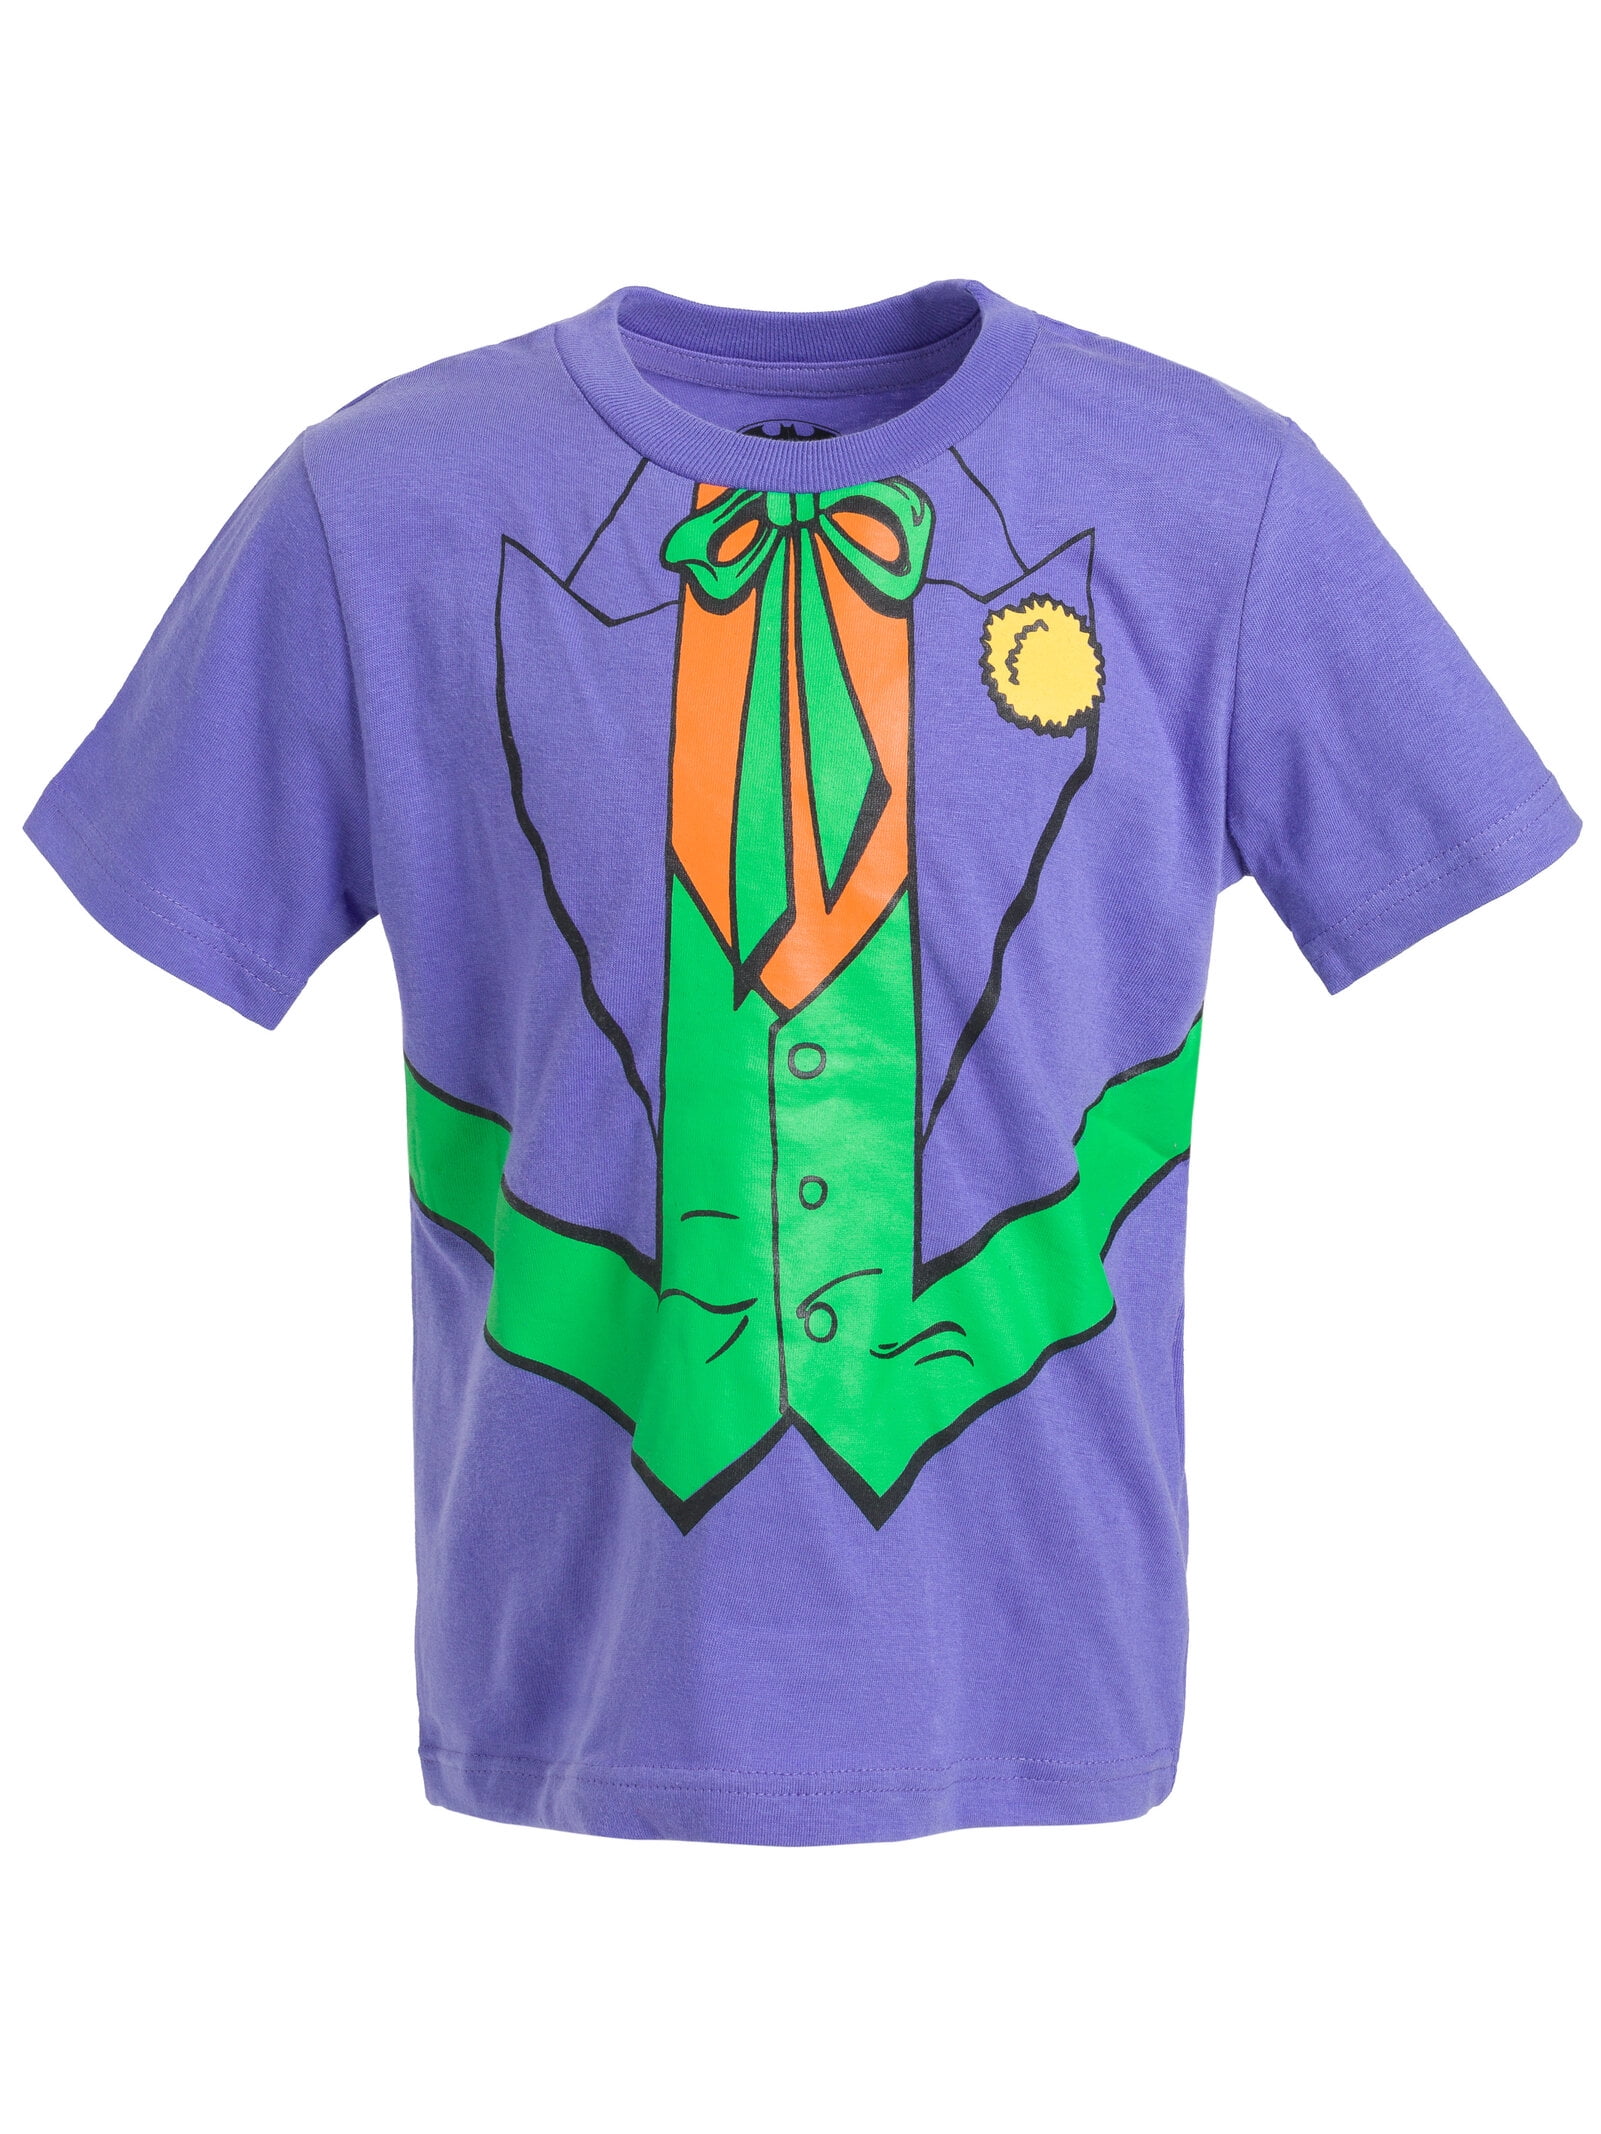 Kid Joker Pack T-Shirts Toddler Little Batman DC Riddler to Comics 3 Boys Big